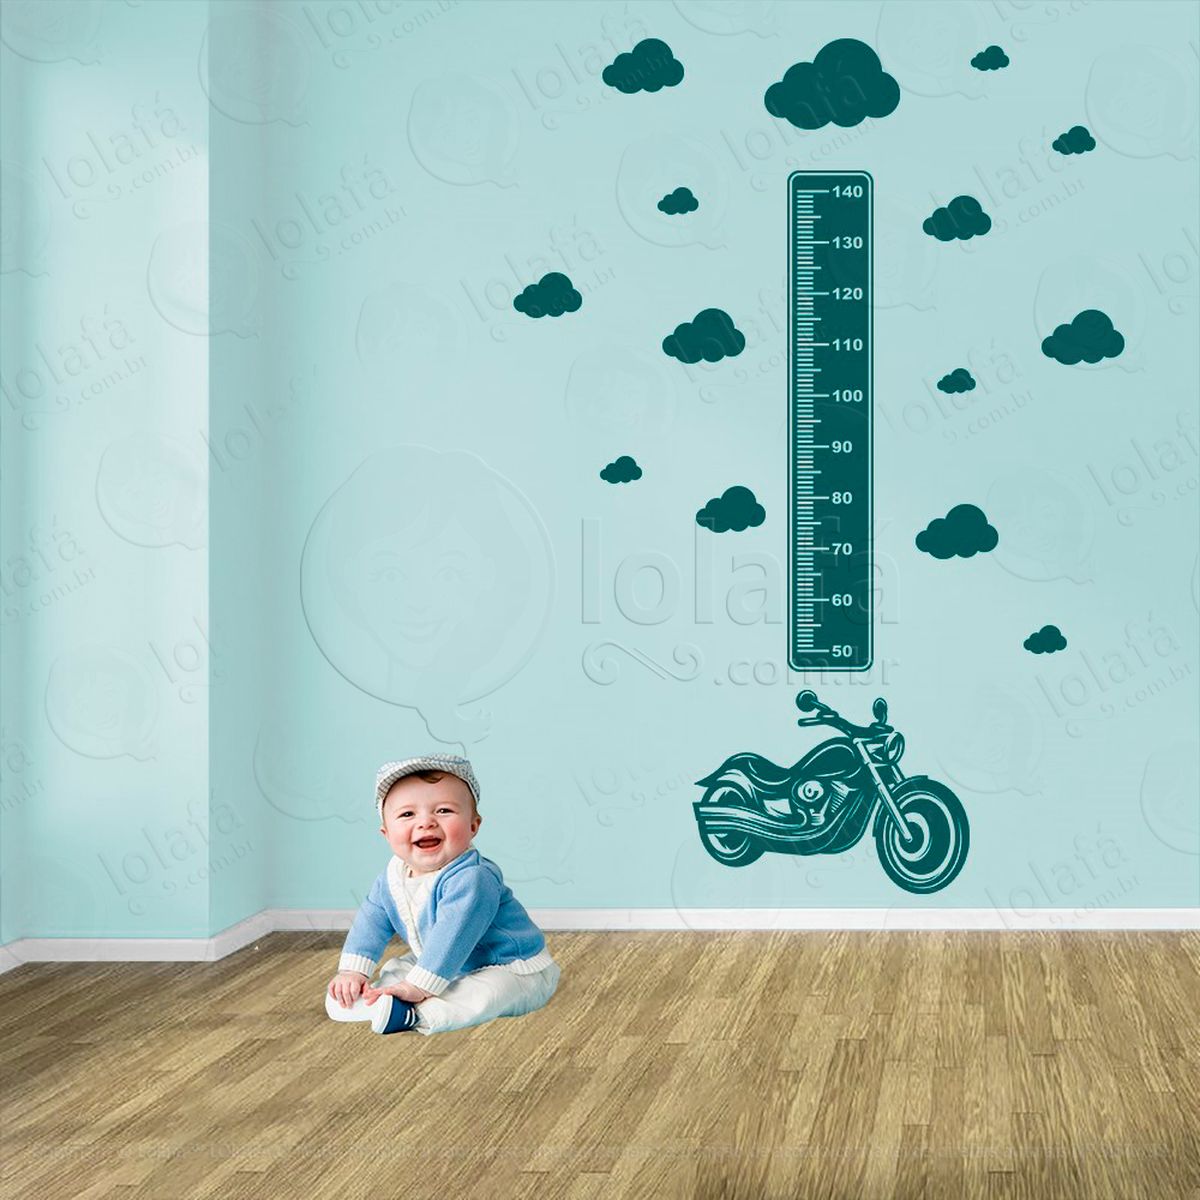 moto e nuvens adesivo régua de crescimento infantil, medidor de altura para quarto, porta e parede - mod:1448